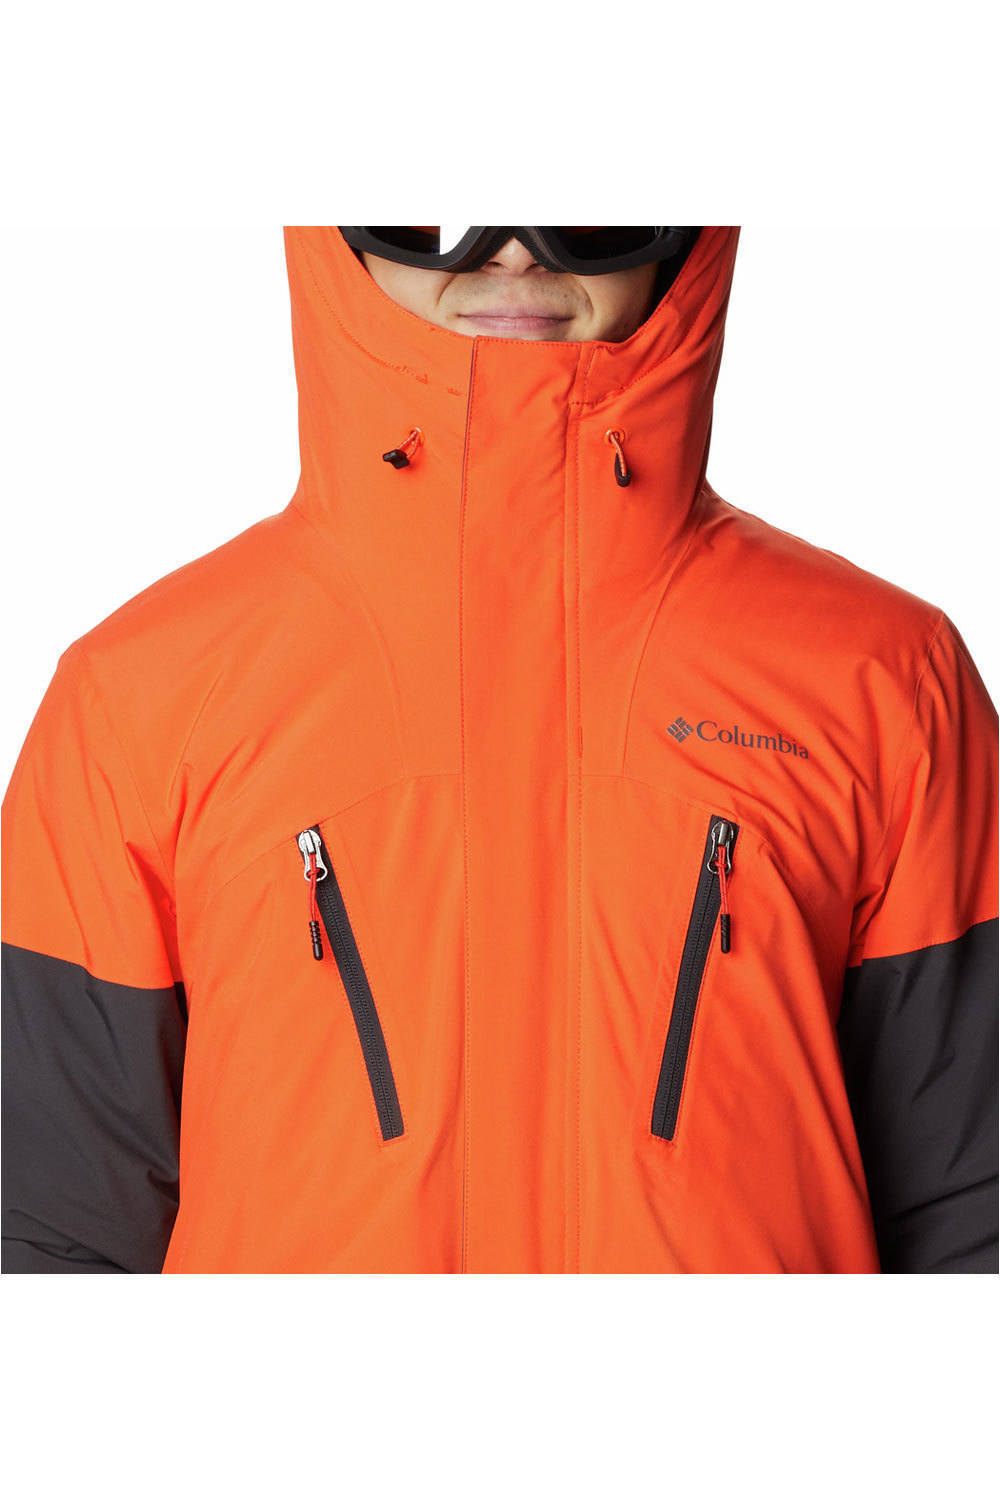 Columbia chaqueta esquí hombre AERIAL ASCENDER RED QUARTZ 03